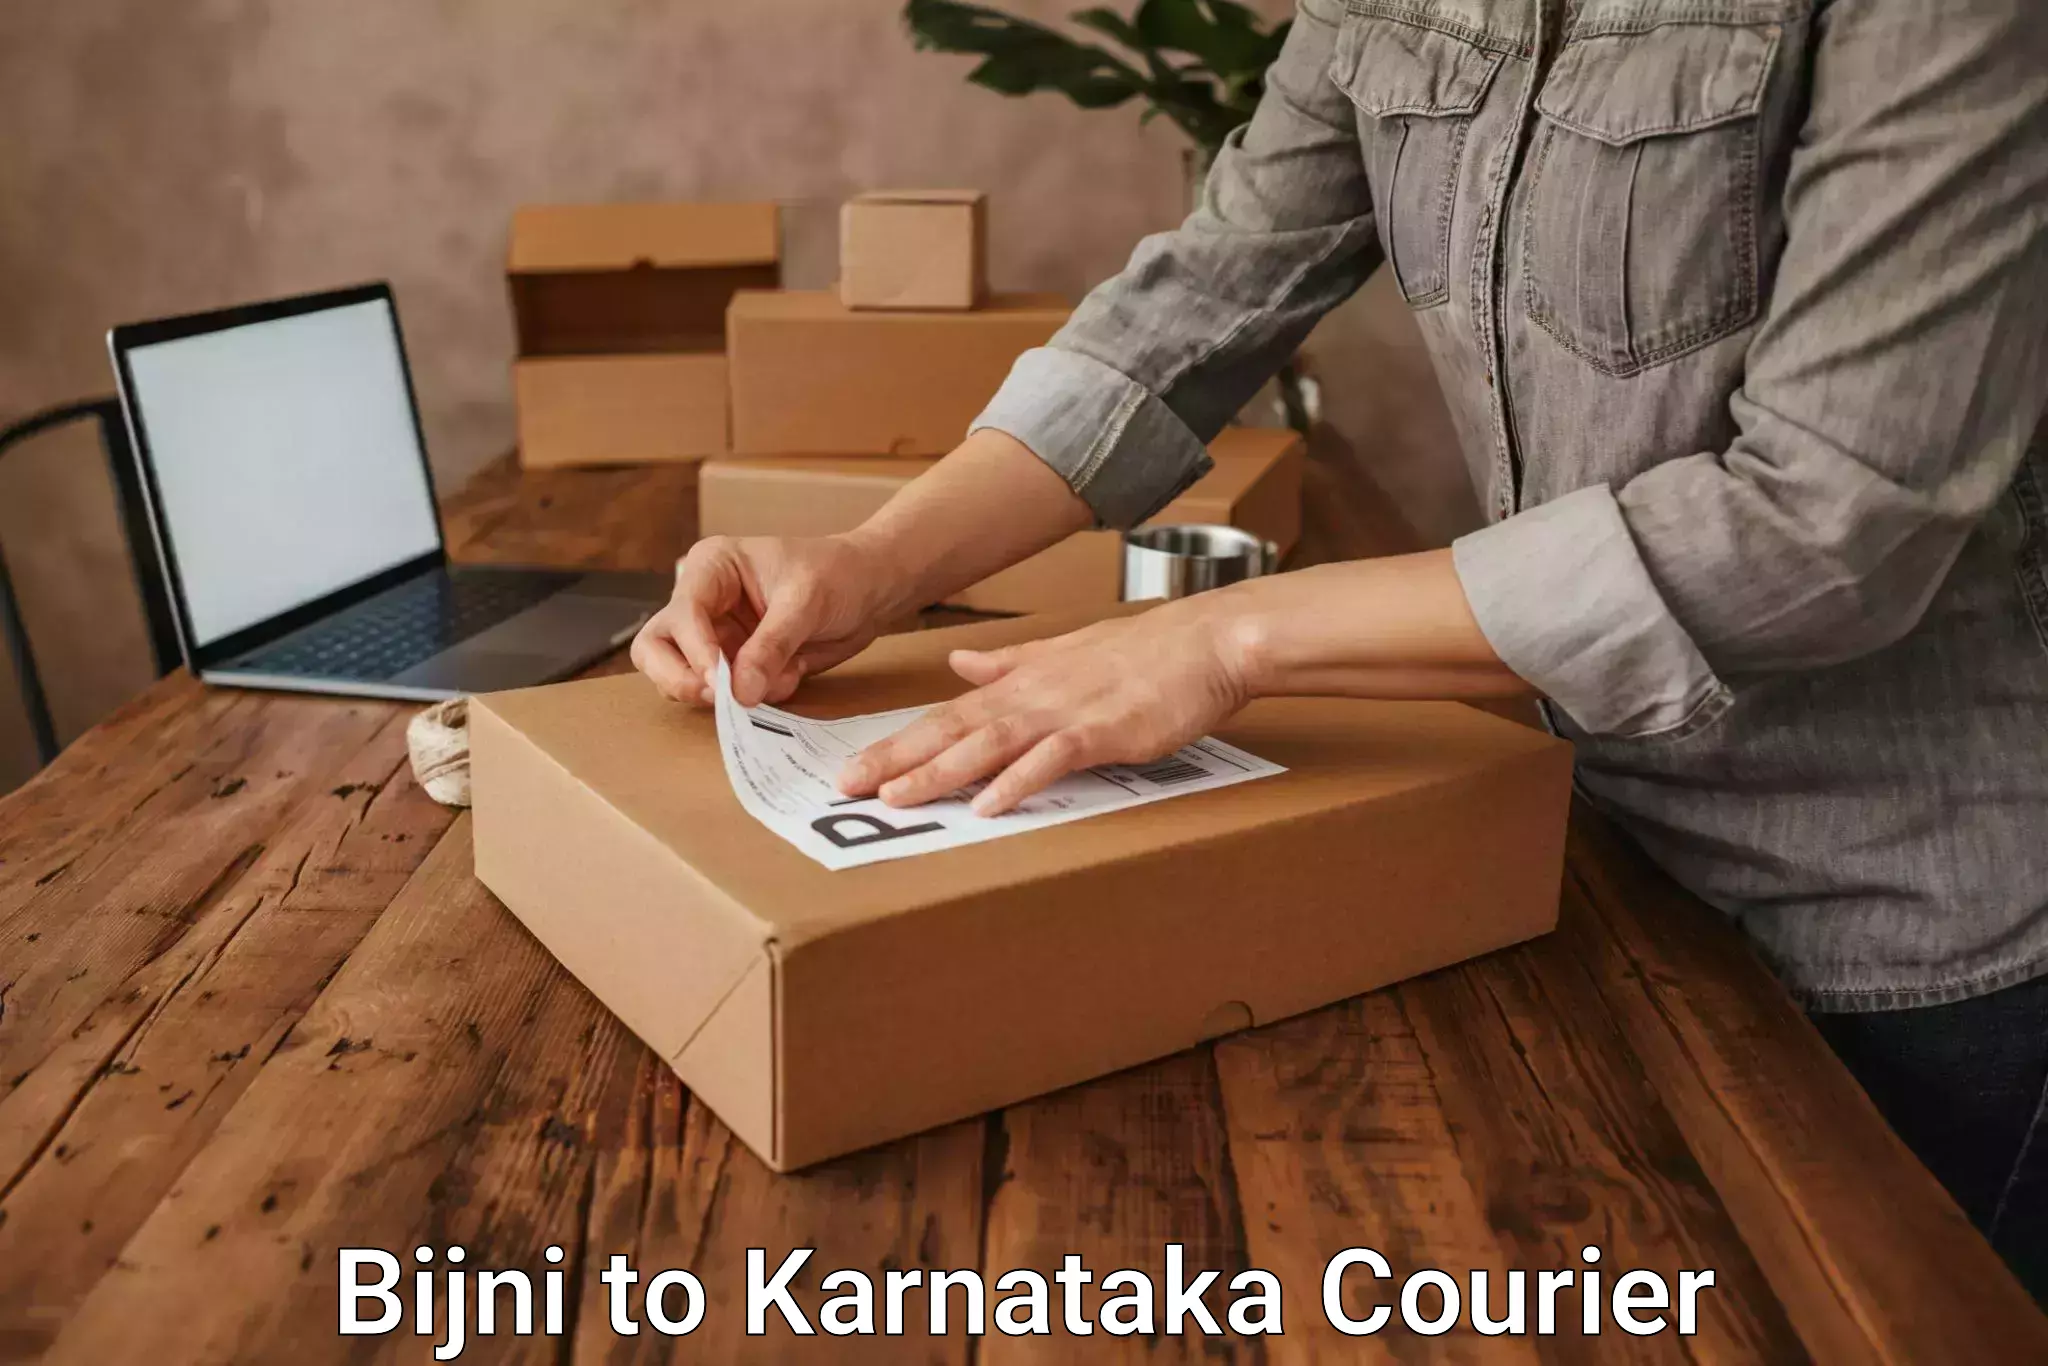 Nationwide courier service Bijni to Karnataka